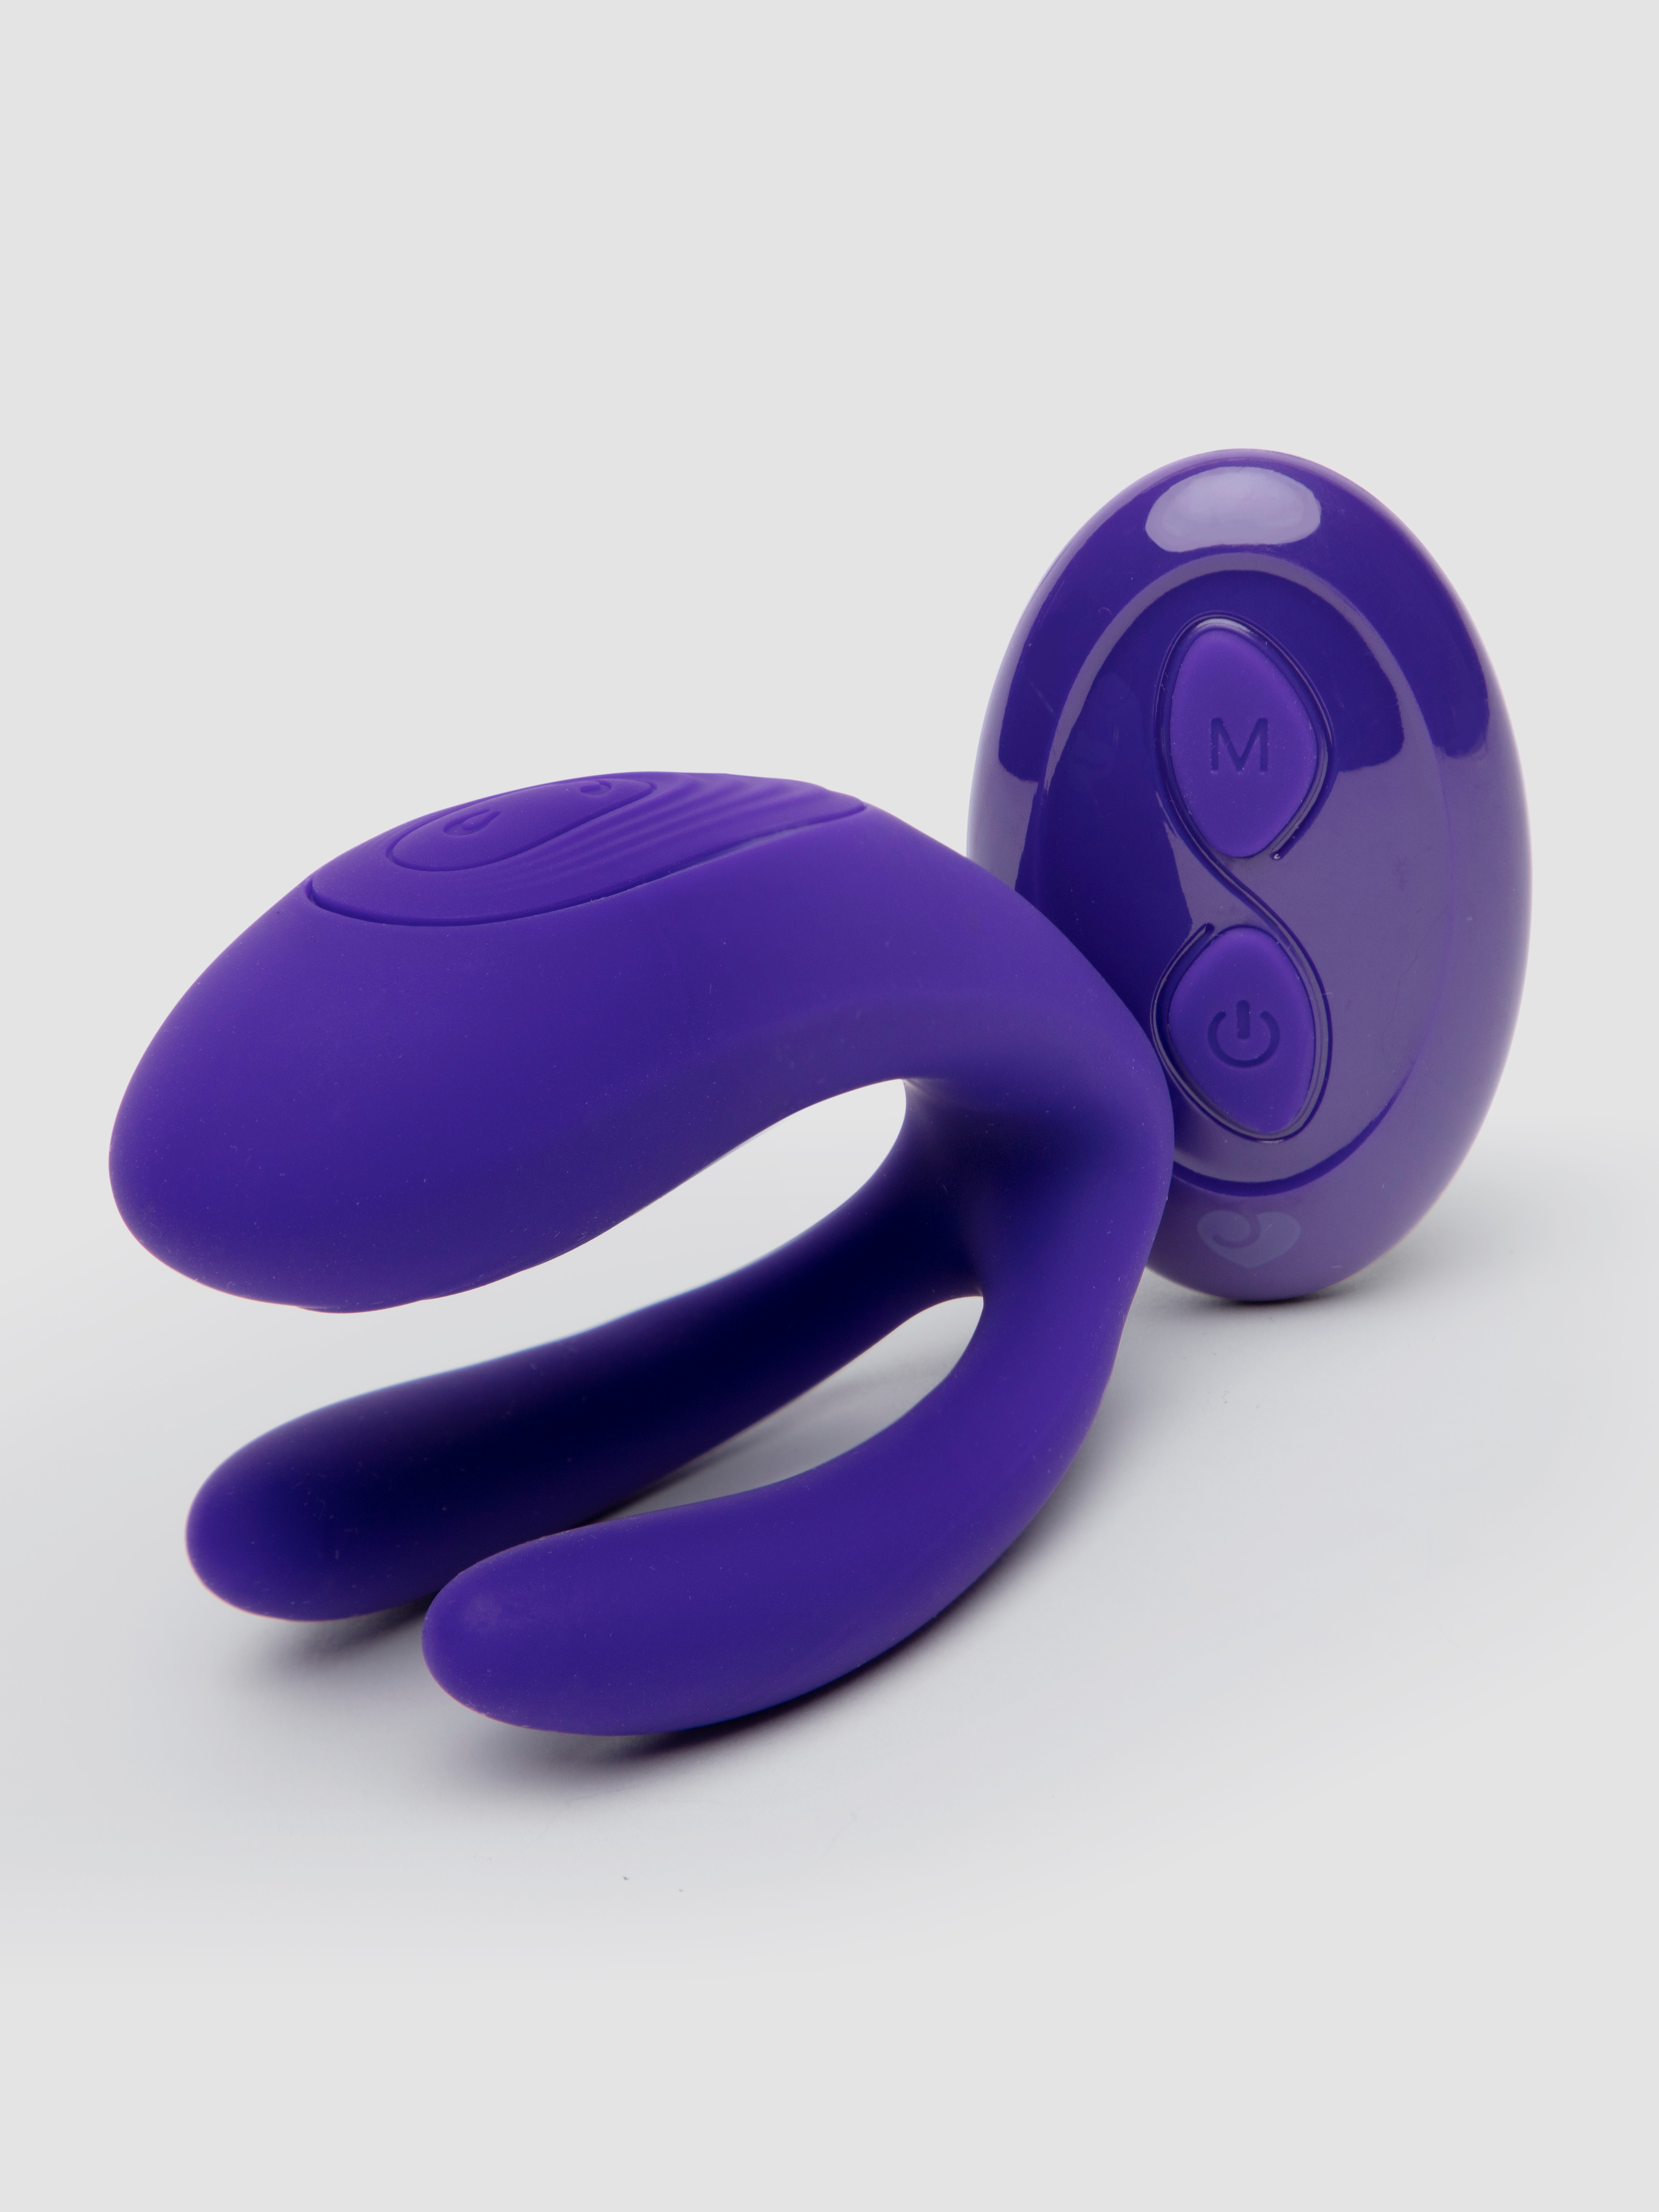 Lovehoney Sweet Curve Remote Control Silicone Clitoral Vibrator - Purple